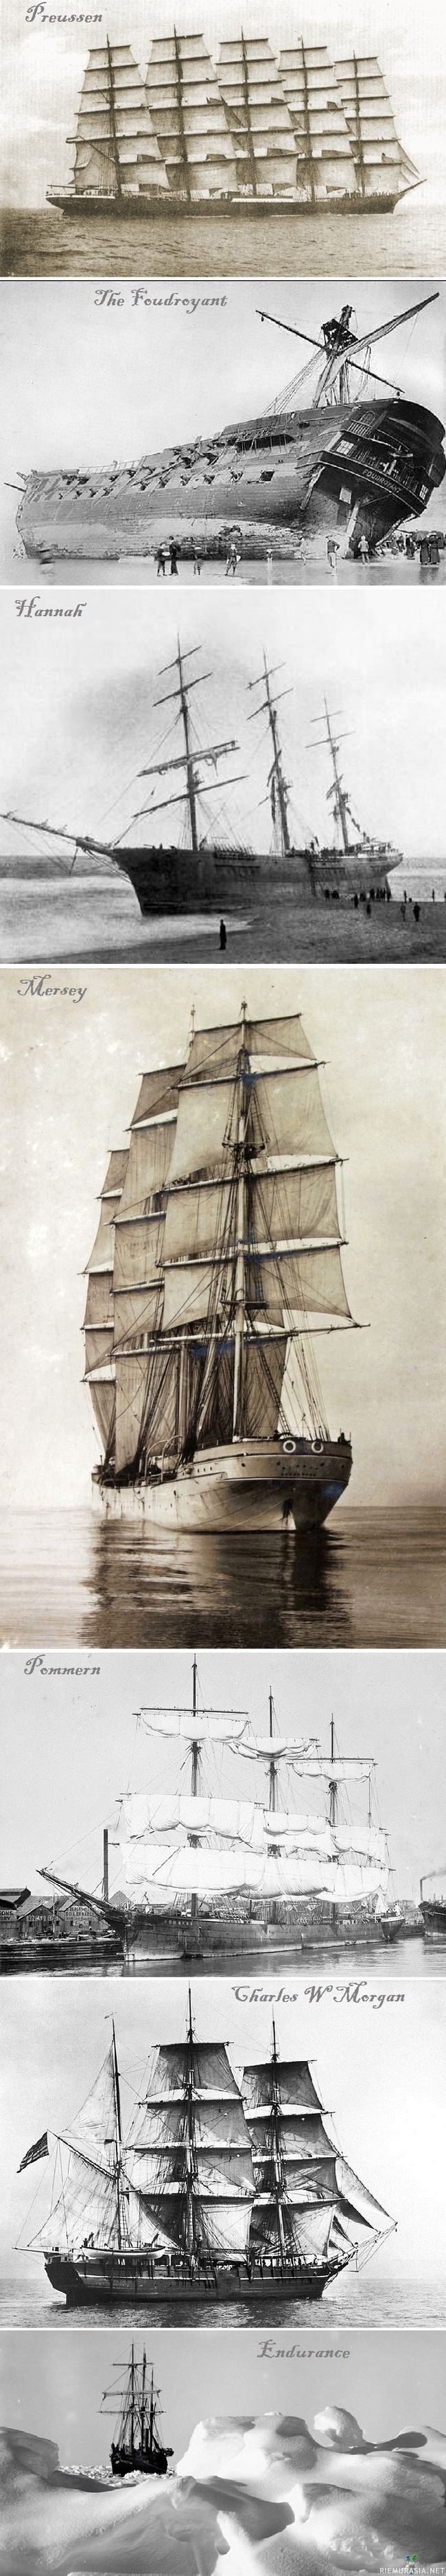 Vanhoja hienoja purjelaivoja - PREUSSEN saksalainen viisimastoinen purjelaiva joka rakennettiin 1902 se on suurin koskaan rakennettu purjelaiva.

THE FOUDROYANT Kesäkuun 16. päivänä 1897 laiva saatiin pelastettua rantaan varmalta uppoamiselta myrskyssä Blackpoolin lähellä englannissa, laiva tosin vaurioitui pahasti. Kuvassa ihmiset keräämässä kappaleita laivasta muistoksi rannallla.

HANNAH rakennettiin 1826 New Brunswick, Kanadassa. Kuva 1849 samalta retkeltä missä myöhemmin Hannah upposi 40 minuutissa törmättyään jäävuoreen matkalla Quebec Cityyn.

MERSEY Englantilainen purjerahtilaiva kuva vuodelta 1894. Laivaa käytettiin pääasiassa metallin kuljettamiseen.

POMMERN rahtipurjealus, joka on nykyisin museolaivana Maarianhaminassa. Pommern on teräsrunkoinen nelimastoinen parkki. Se rakennettiin 1903 Glasgow&#039;ssa.

CHARLES W.MORGAN 1841 valmistunut Amerikkalainen valaanpyyntialus pohjoisen meren oloihin.

ENDURANCE oli brittiläisen tutkimusmatkailija Ernest Shackletonin höyrykonein varustettu parkkilaiva. Kuva vuodelta 1915 laiva jumissa lähes puolikkaan Euroopan kokoisella jäälautalla Etelämantereen rannikolla.

Osa 2 jo nyt suunnitteilla ja tulossa jossain vaiheessa:)